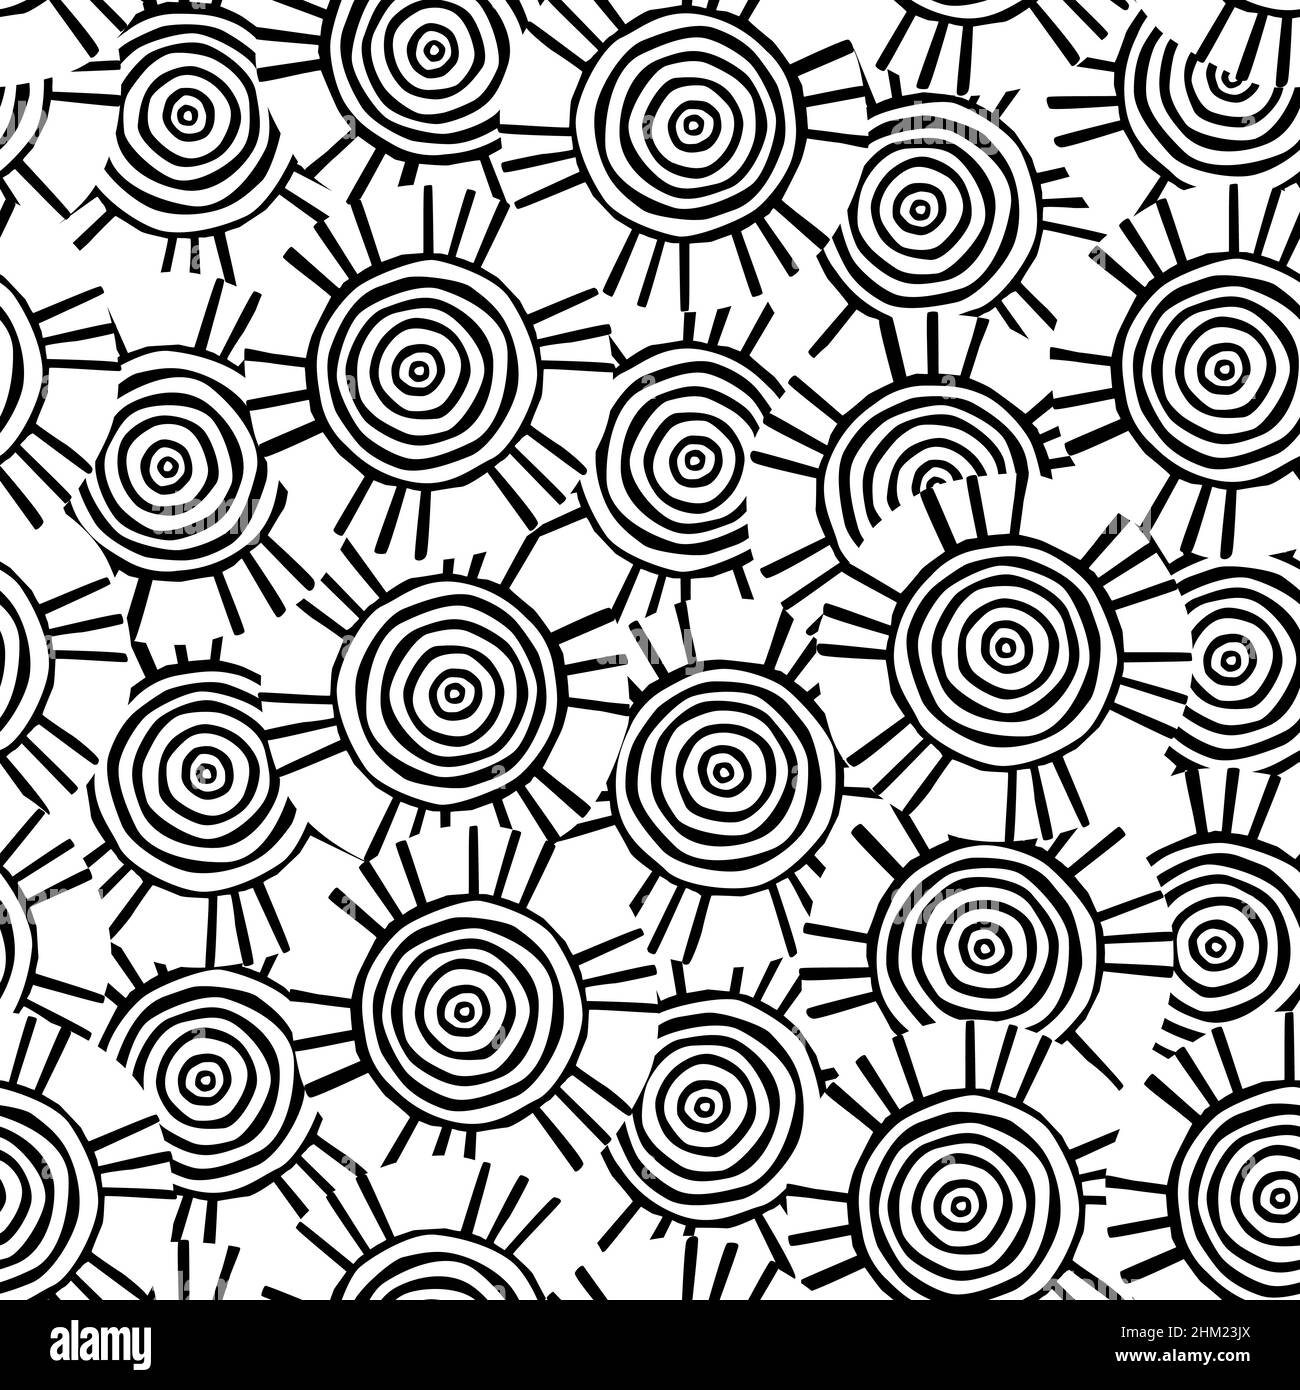 Kreisförmiges Stammesmuster mit Motiven der afrikanischen Stämme Surma und Mursi; nahtlose Textur geeignet für Print, Textil, Tapete, Hintergrund oder Station Stockfoto